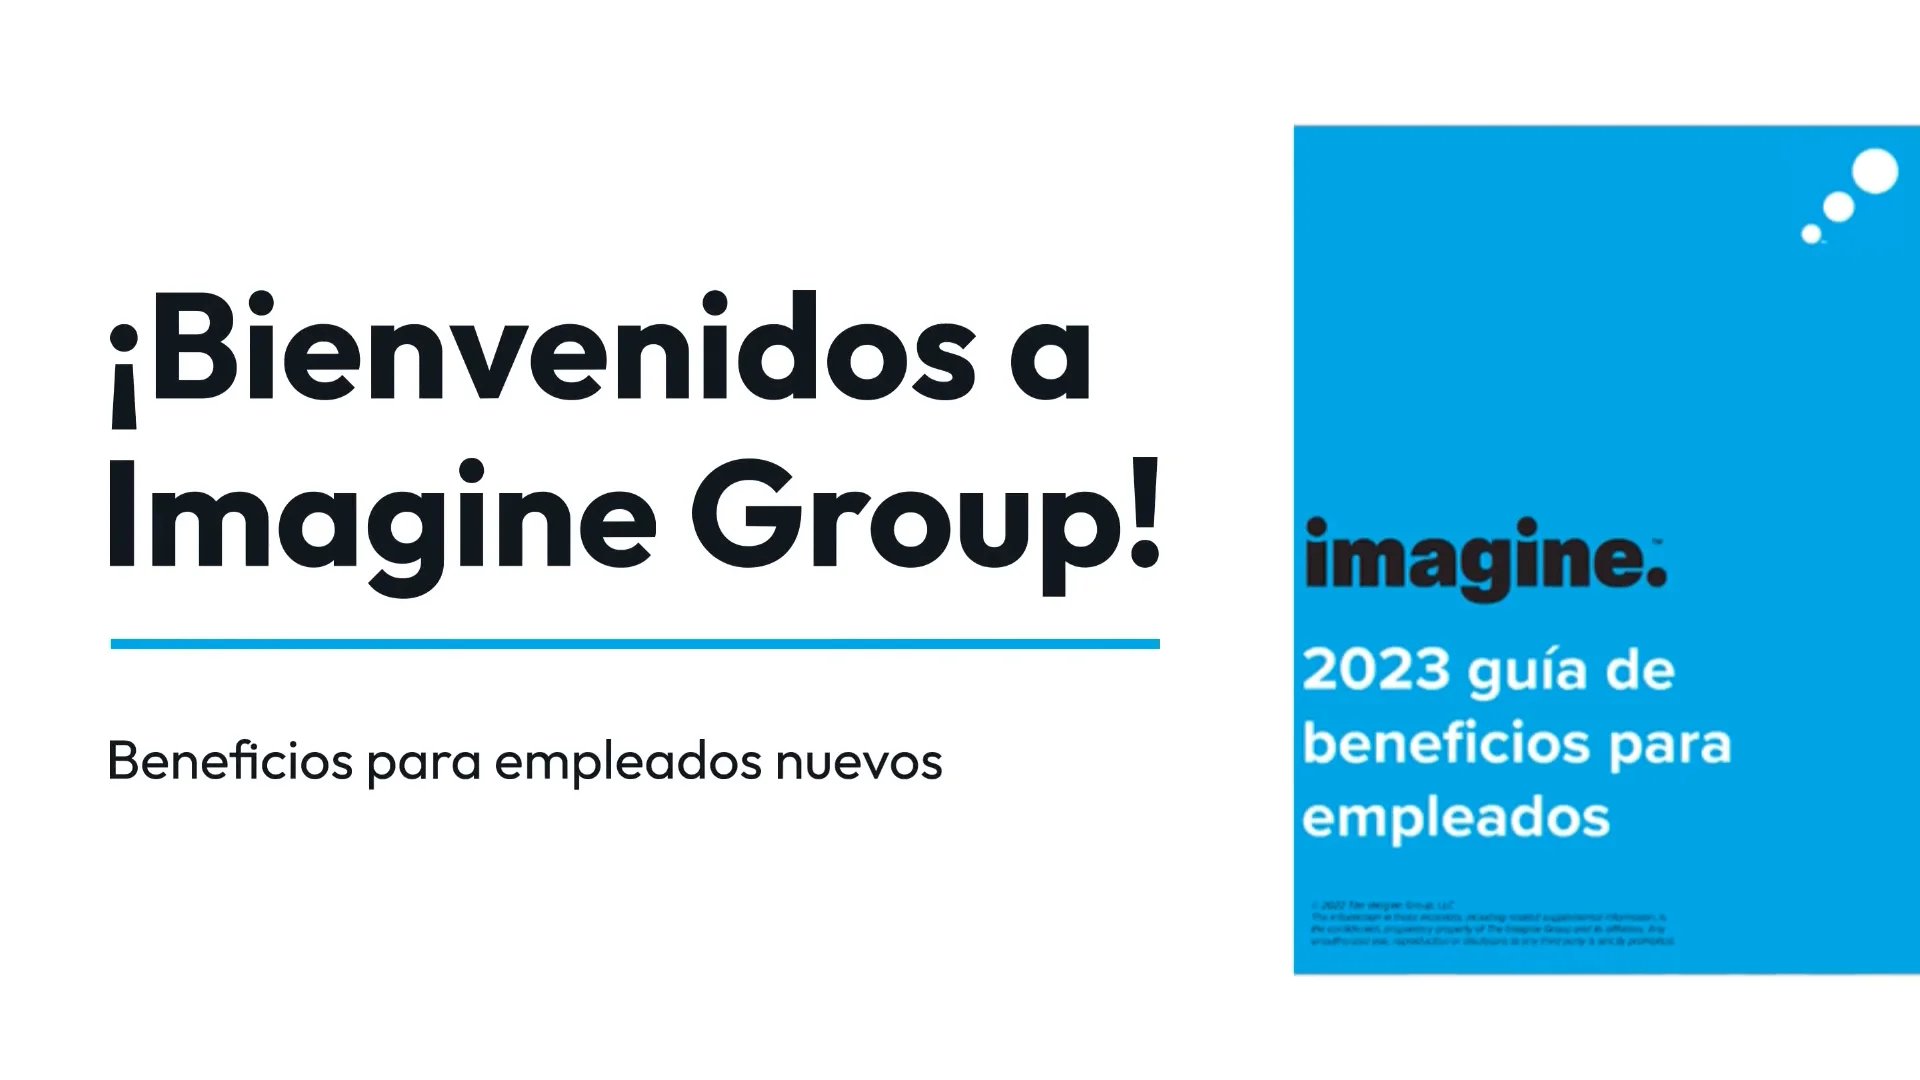 Imagine Group 2023 Spanish - Imagine Group 2023 - Spanish on Vimeo